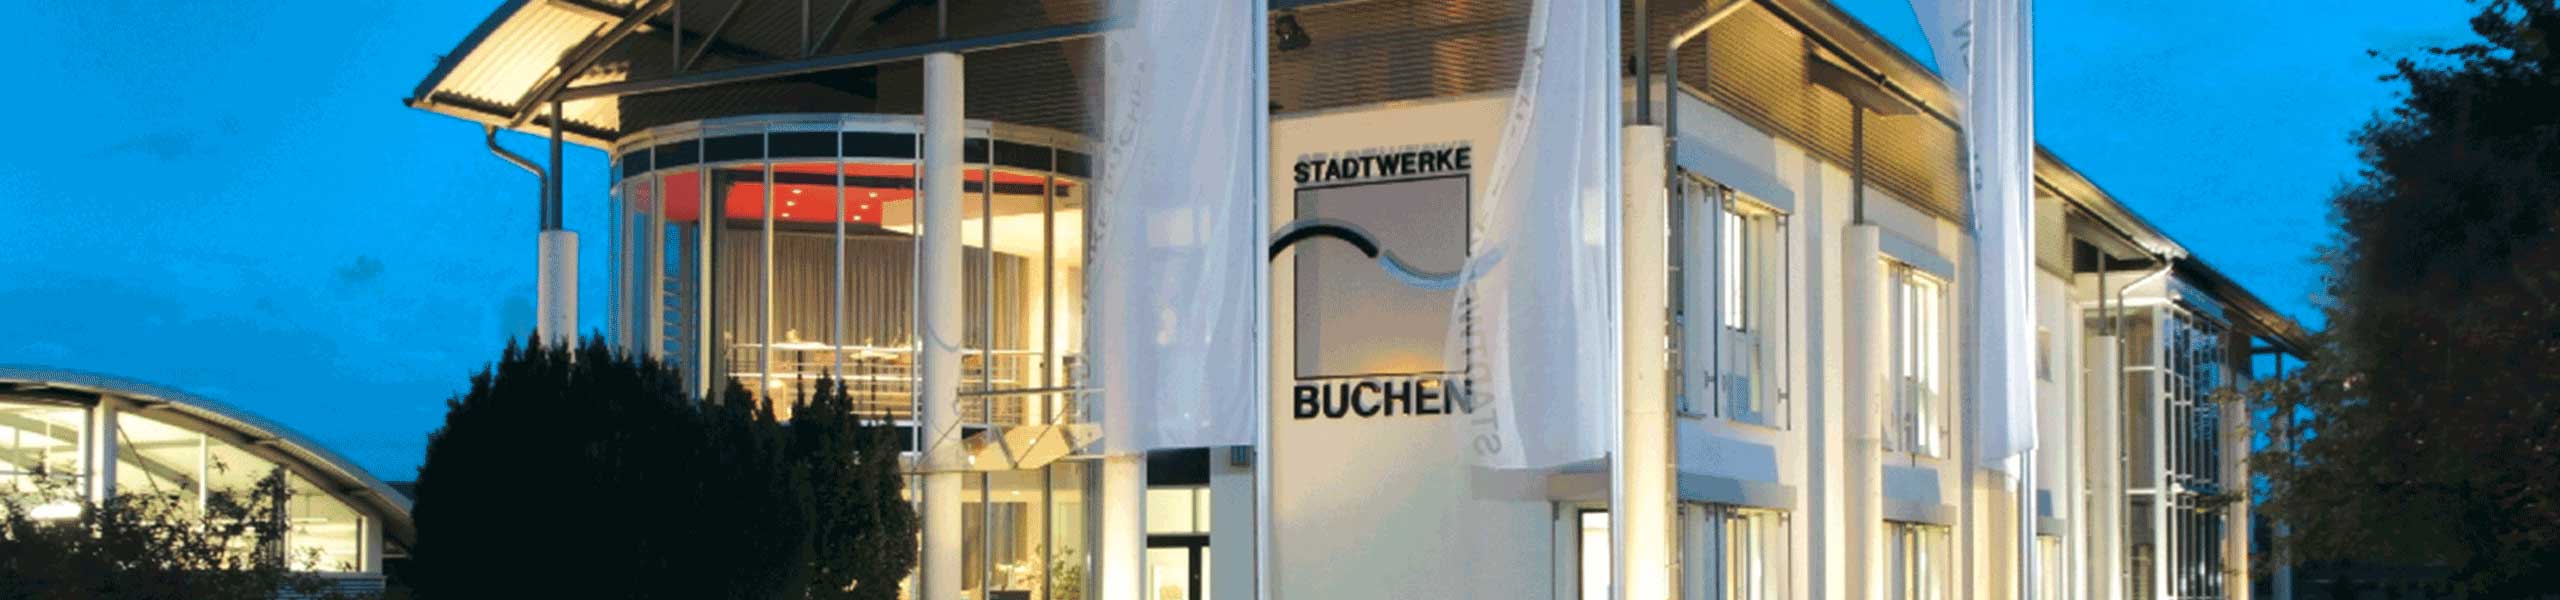 Stadtwerke Buchen GmbH & Co KG - Ihr Versorger vor Ort - Lastprofile